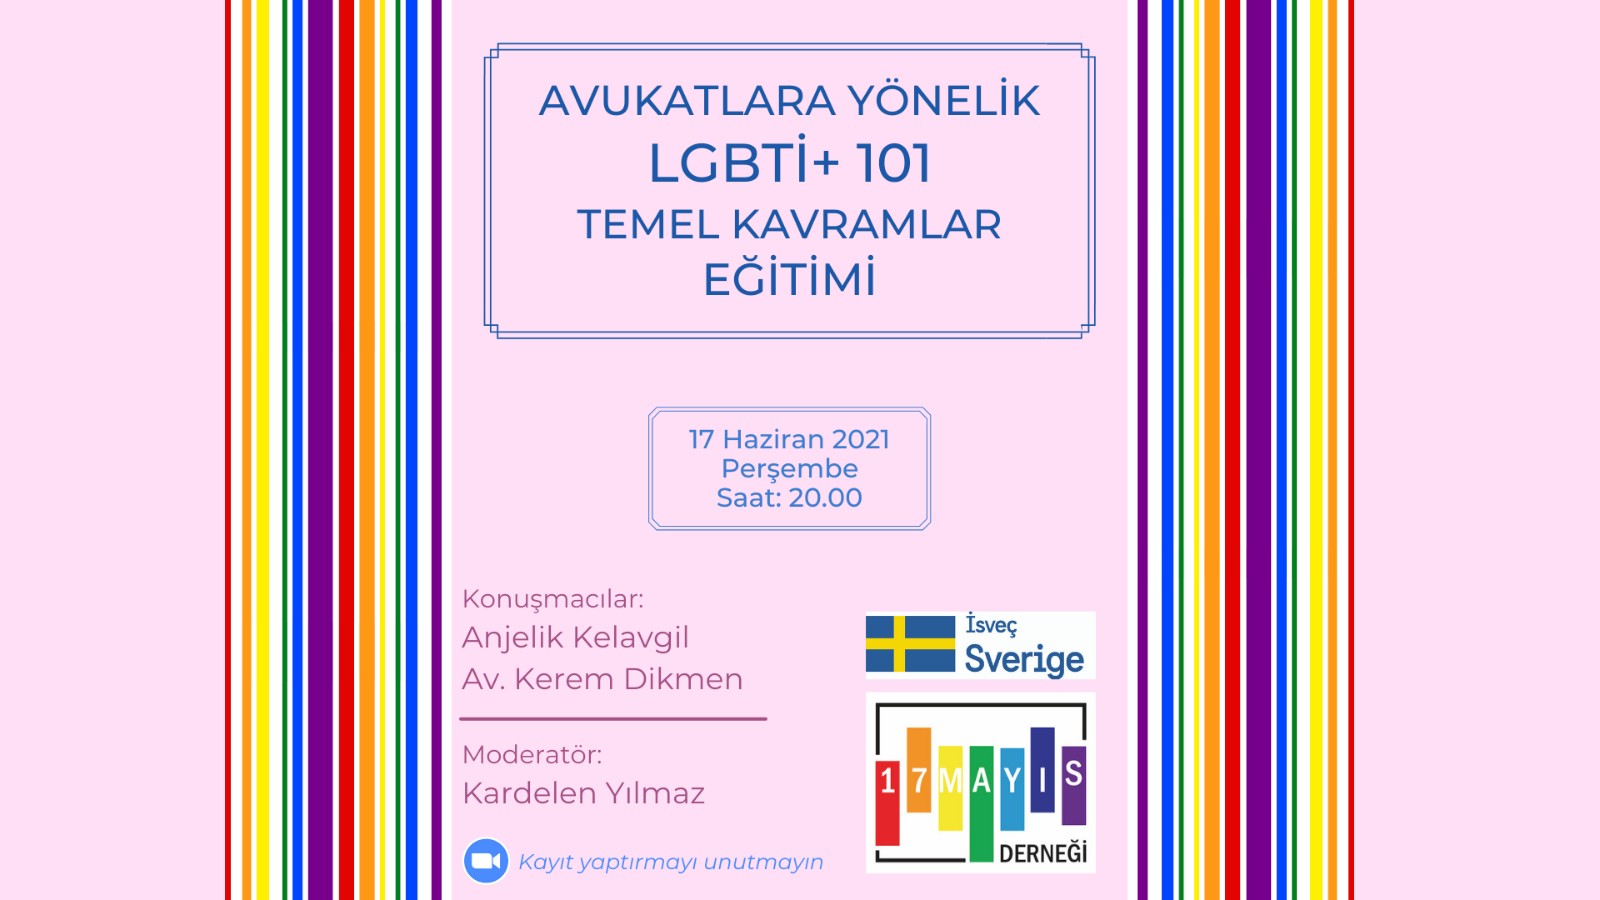 Avukatlara yönelik LGBTİ+ 101 eğitimi yarın! Kaos GL - LGBTİ+ Haber Portalı